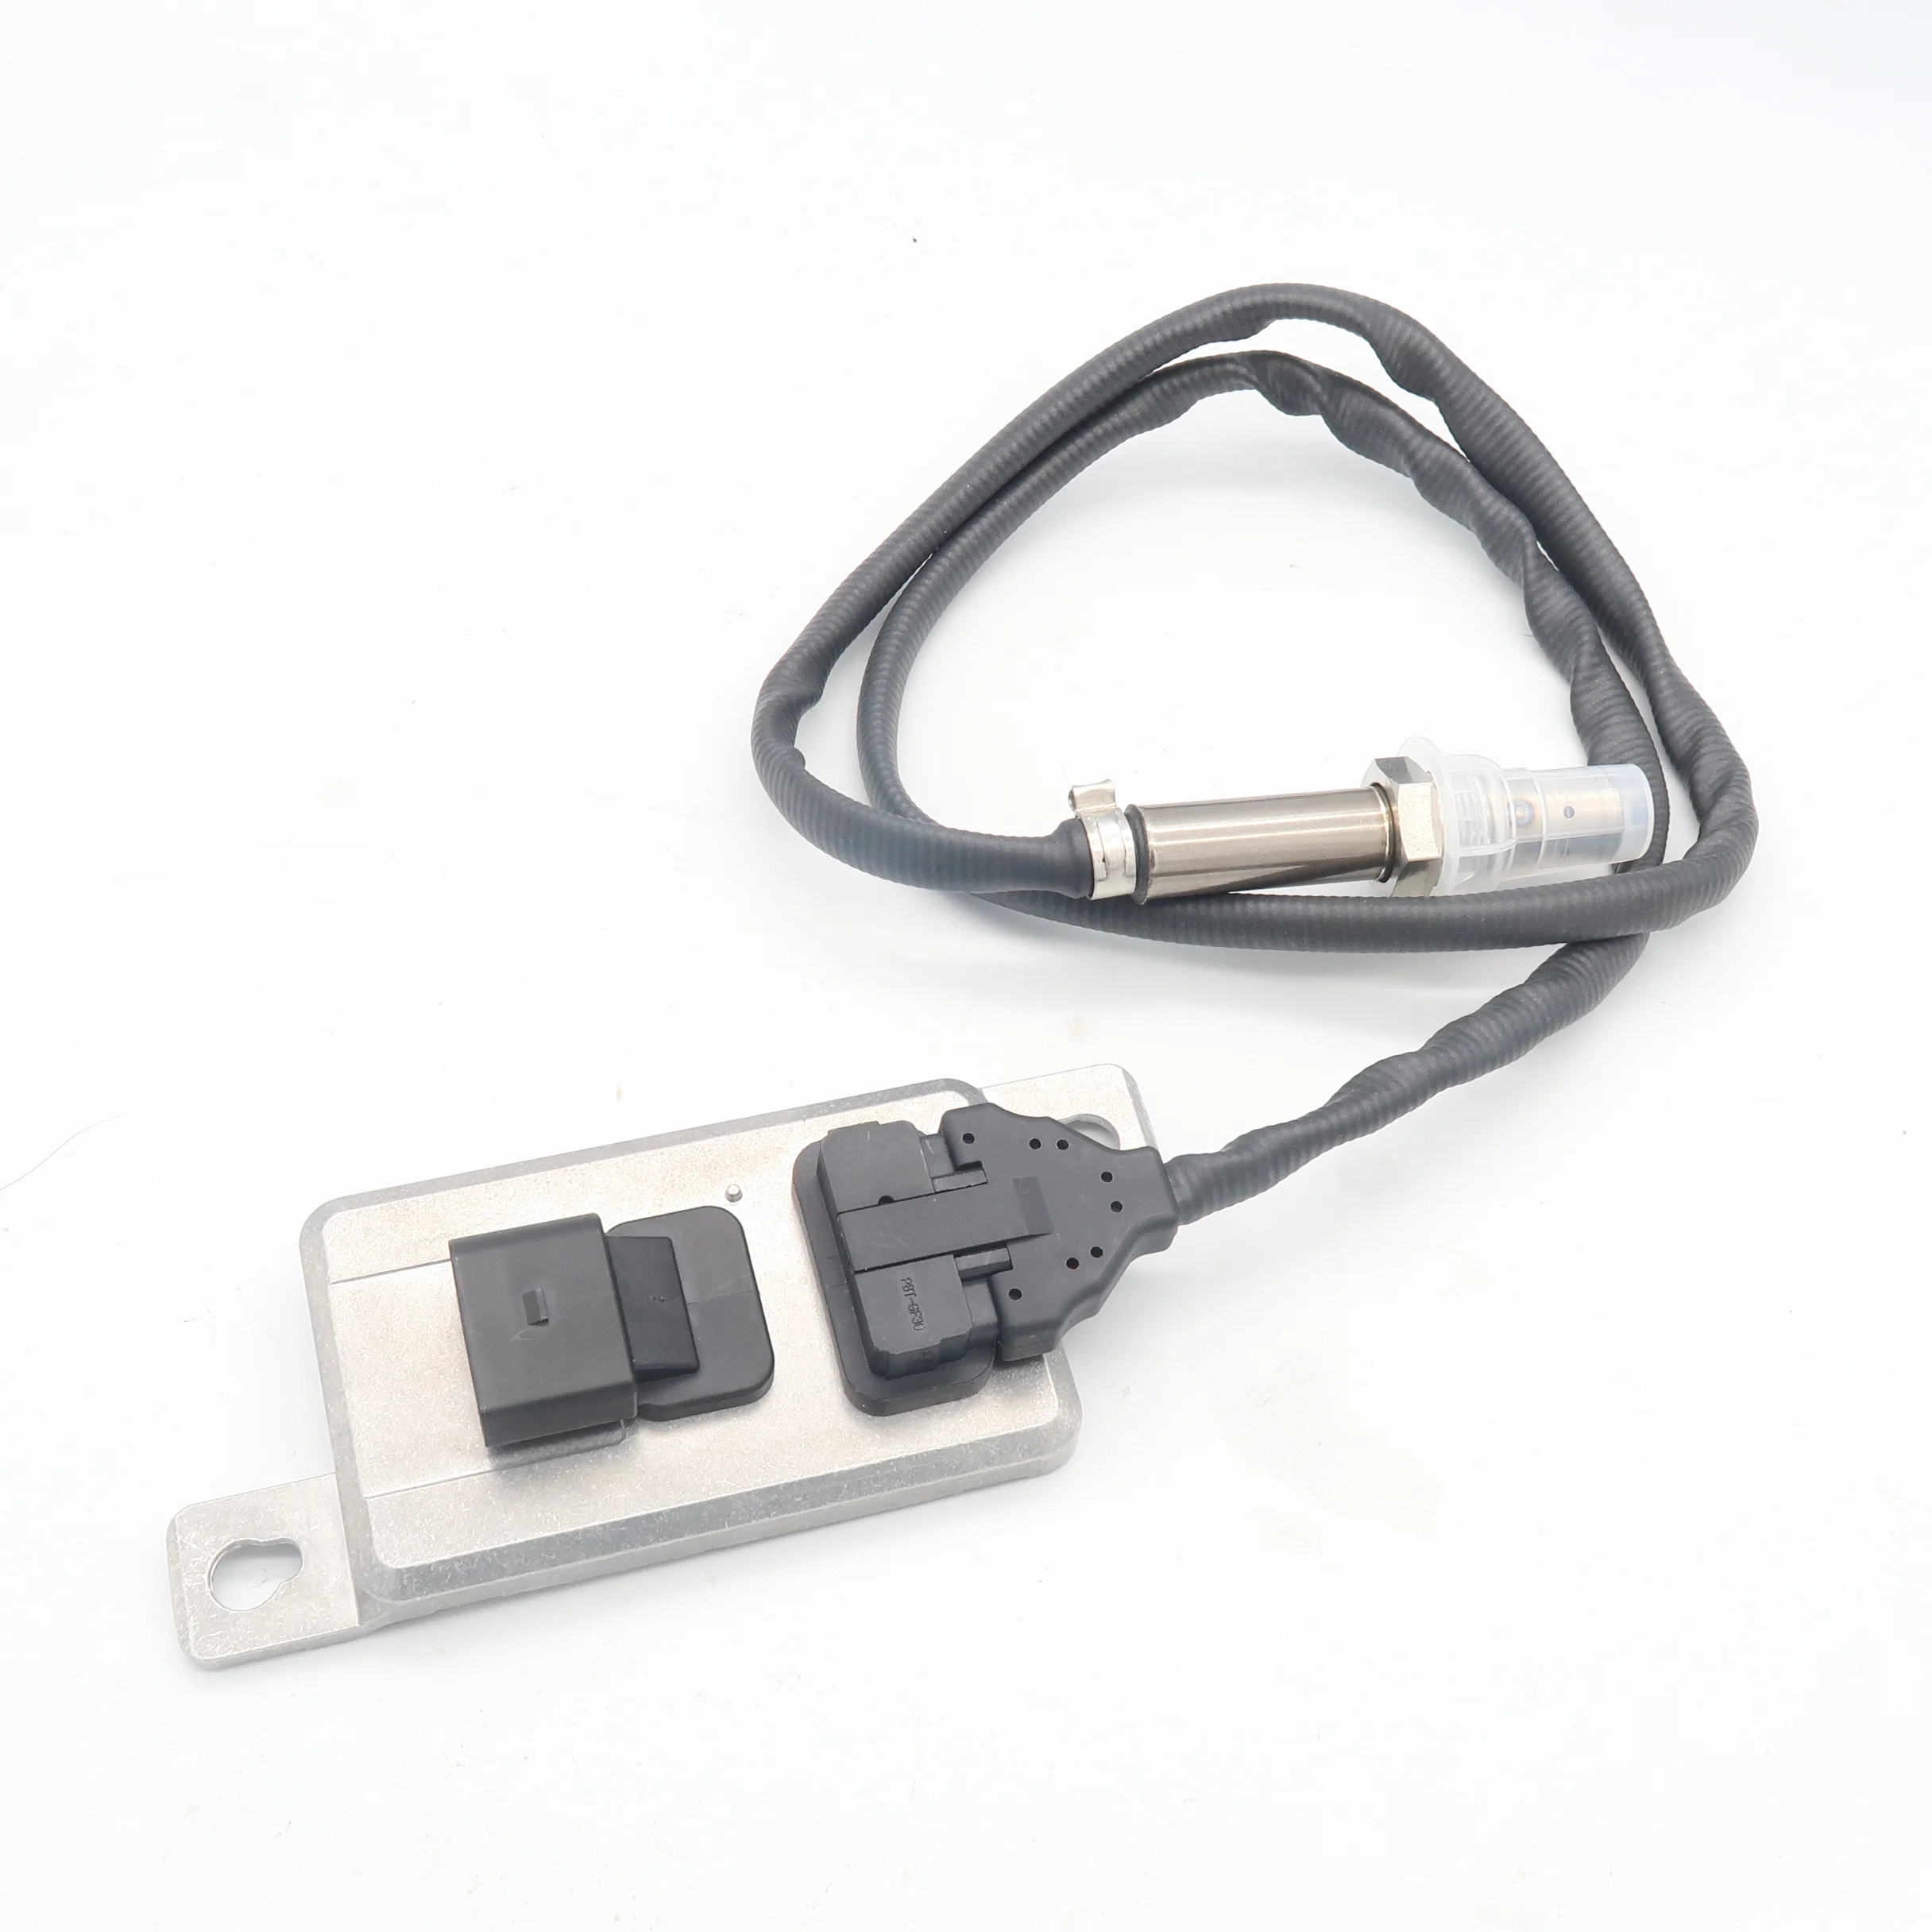 

PEEKEY Nox Sensor Universal 8-WireBand Probe For VW Nitrogen Oxygen Sensor 06F907807F 06F 907 807 F 06F 907 807F